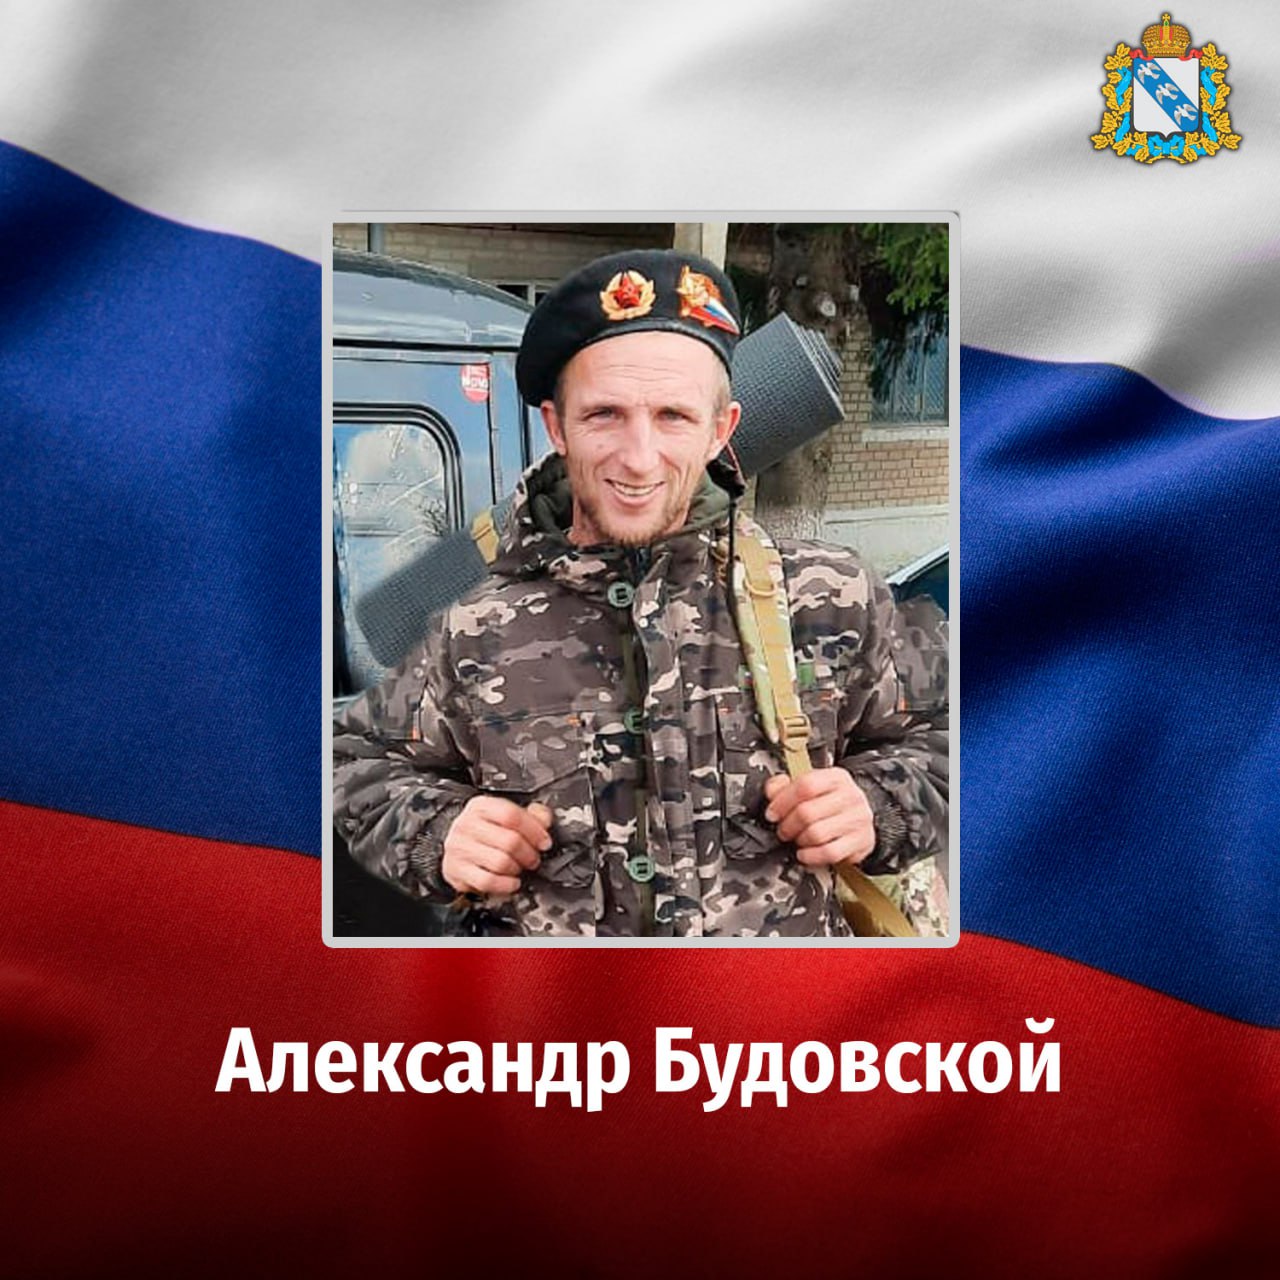 Житель Курской области Александр Будовской погиб во время специальной военной операции